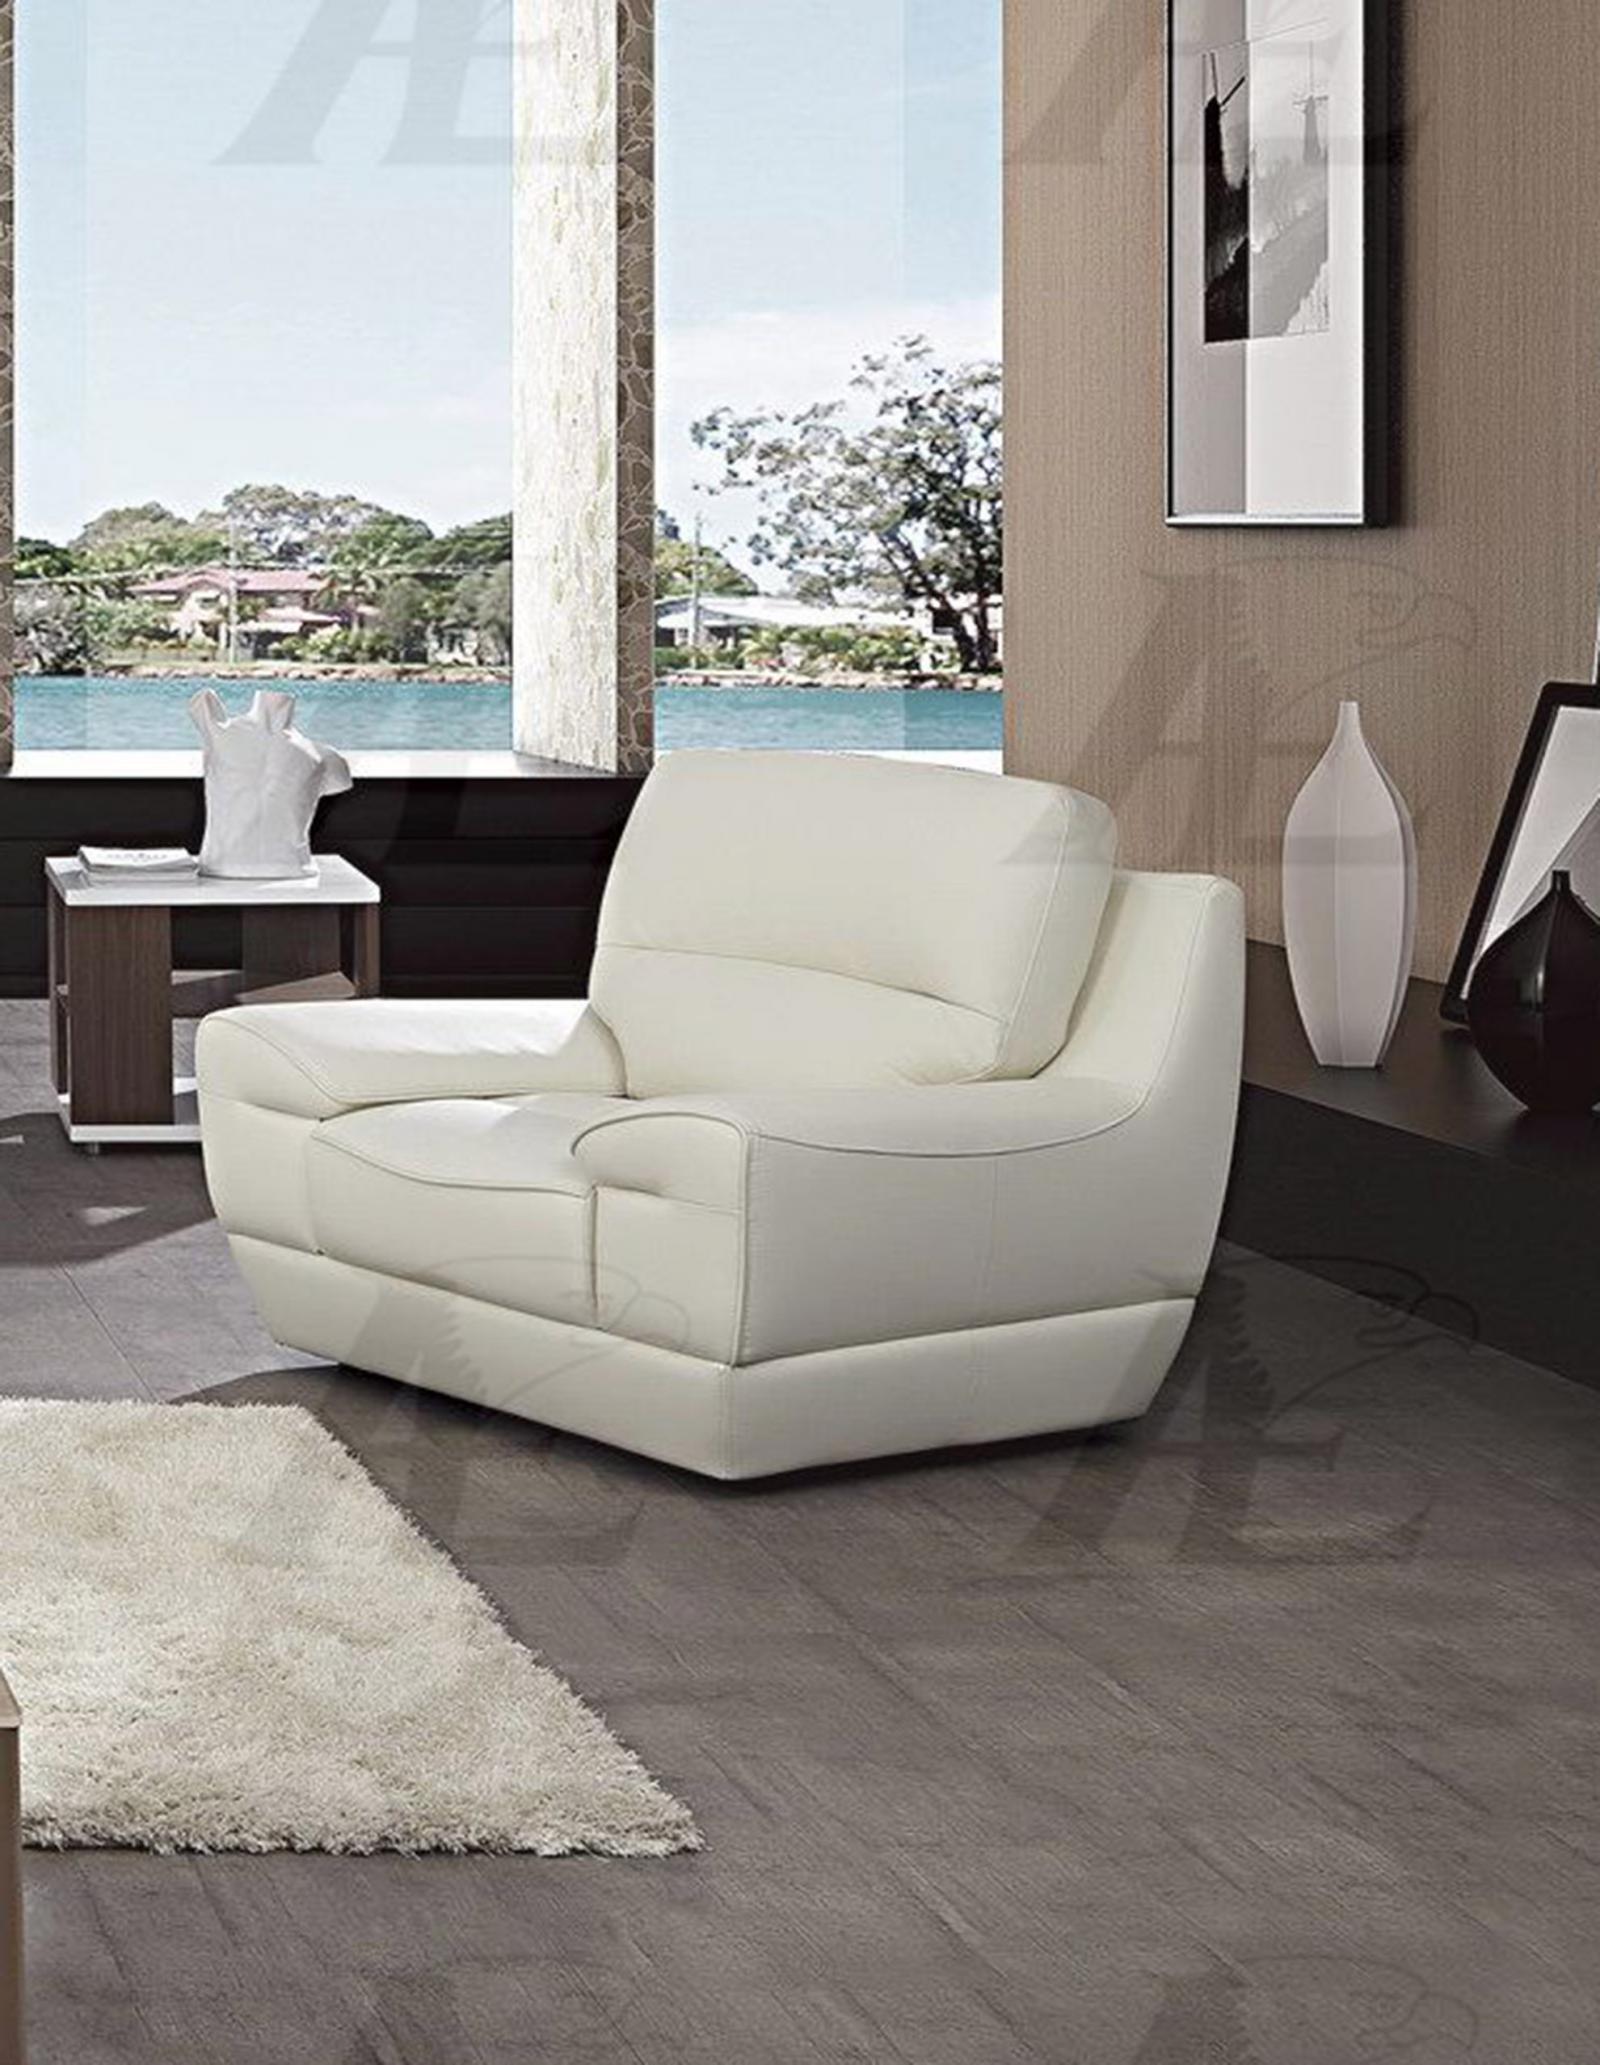 

    
American Eagle Furniture EK018-W Loveseat and Chair Set White EK018-W-Set 2
